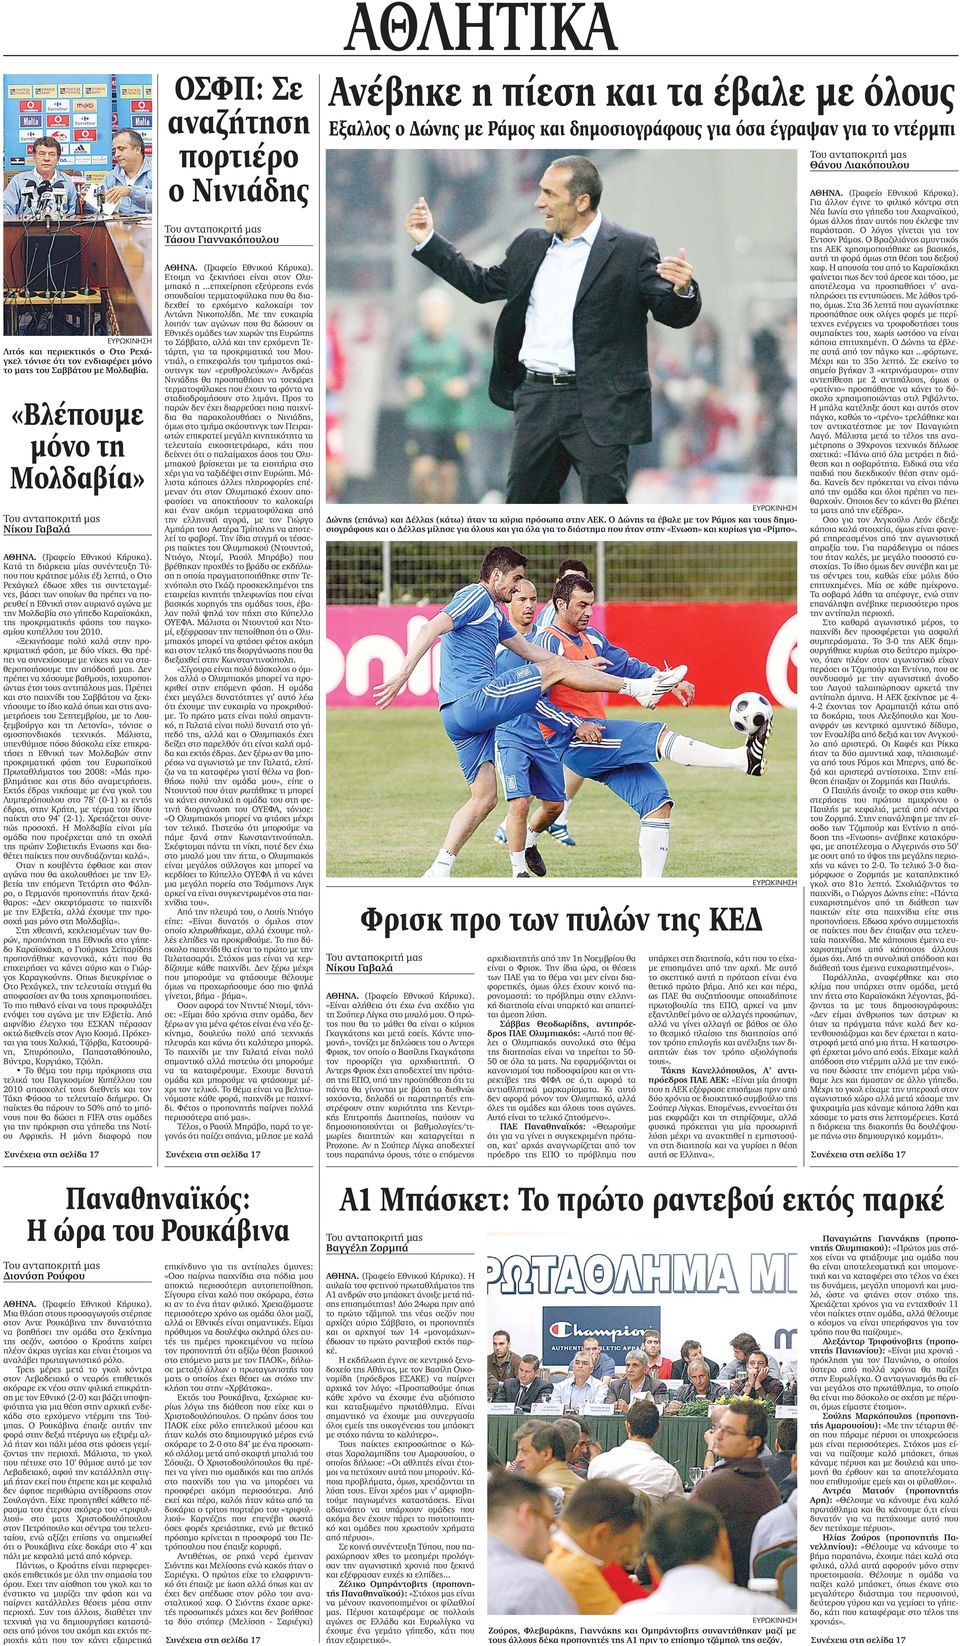 πρέπει να πορευθεί η Εθνική στον αυριανό αγώνα µε την Μολδαβία στο γήπεδο Καραϊσκάκη, της προκριµατικής φάσης του παγκοσµίου κυπέλλου του 2010.